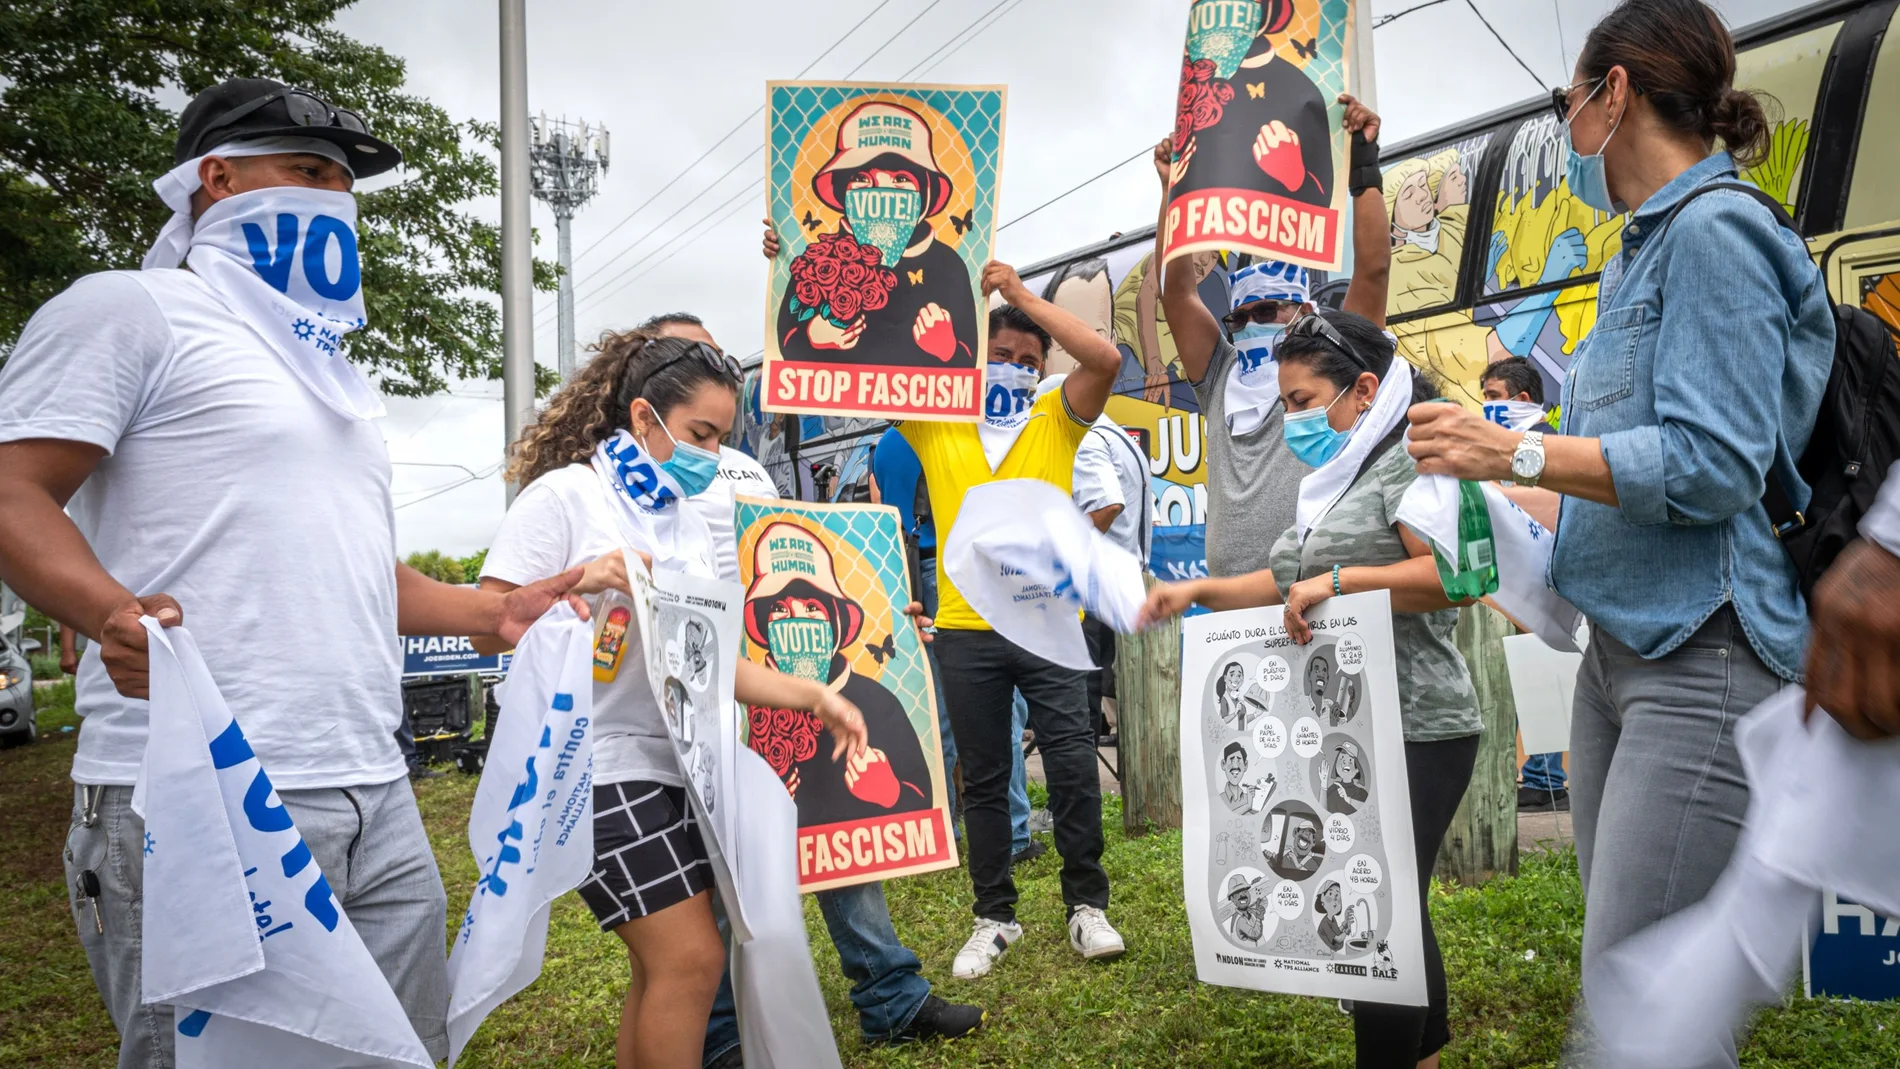 Beneficiarios del Estatus de Protección Temporal (TPS) sostienen pancartas que dicen "Stop Fascism" (Basta de fascismo) a la llegada del autobús "La libertad" y rodeados de carteles electorales, en Miami, Florida (EEUU).